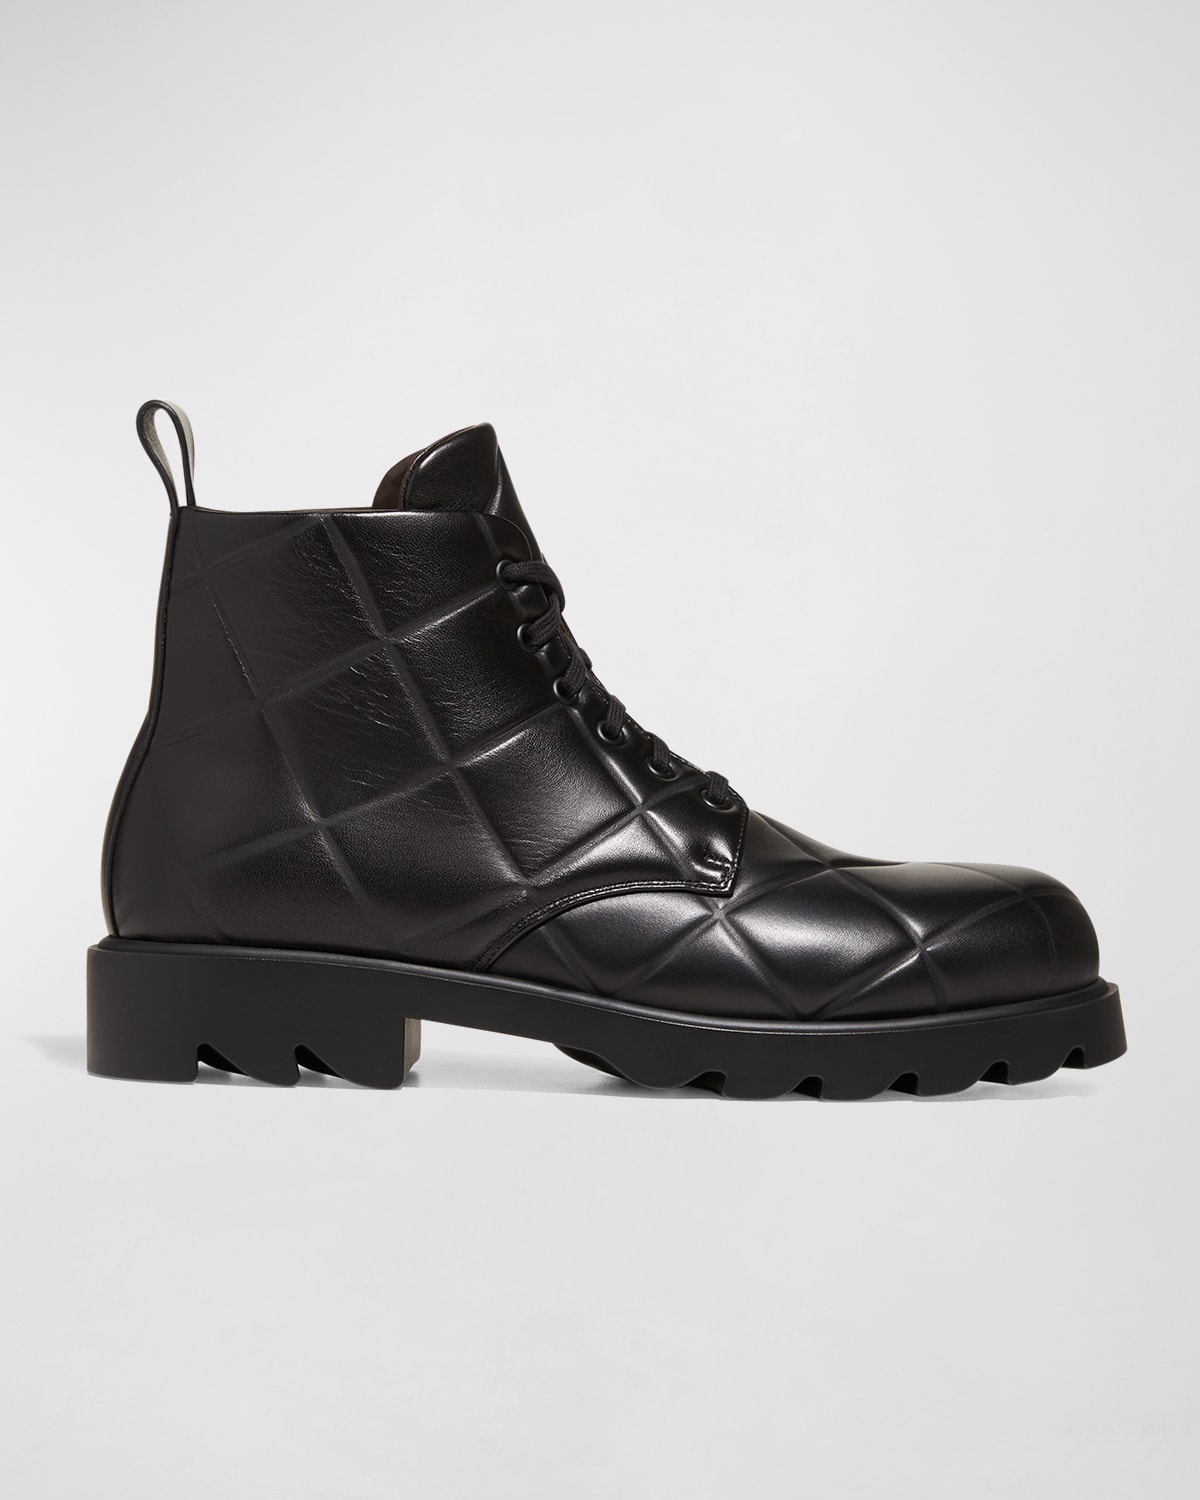 Versace Men's Greca-Sole Leather Combat Boots | Neiman Marcus